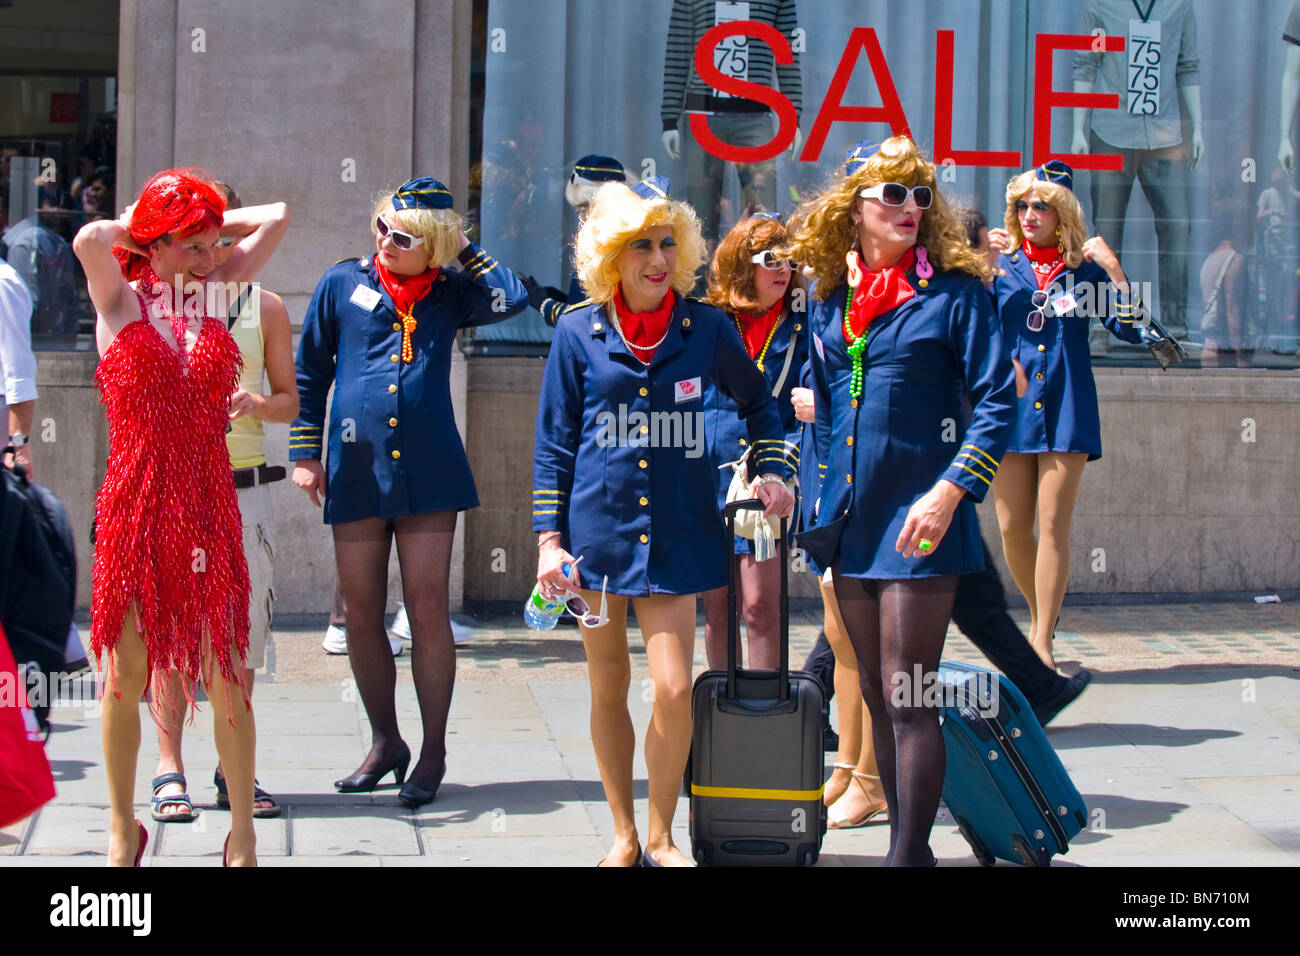 London Gay Pride, junge Männer gekleidet als Stewardessen in kurzen  Kleidern, weiblichen Perücken, Highheels & Strumpfhosen machen Sie sich  bereit für Festzug Stockfotografie - Alamy